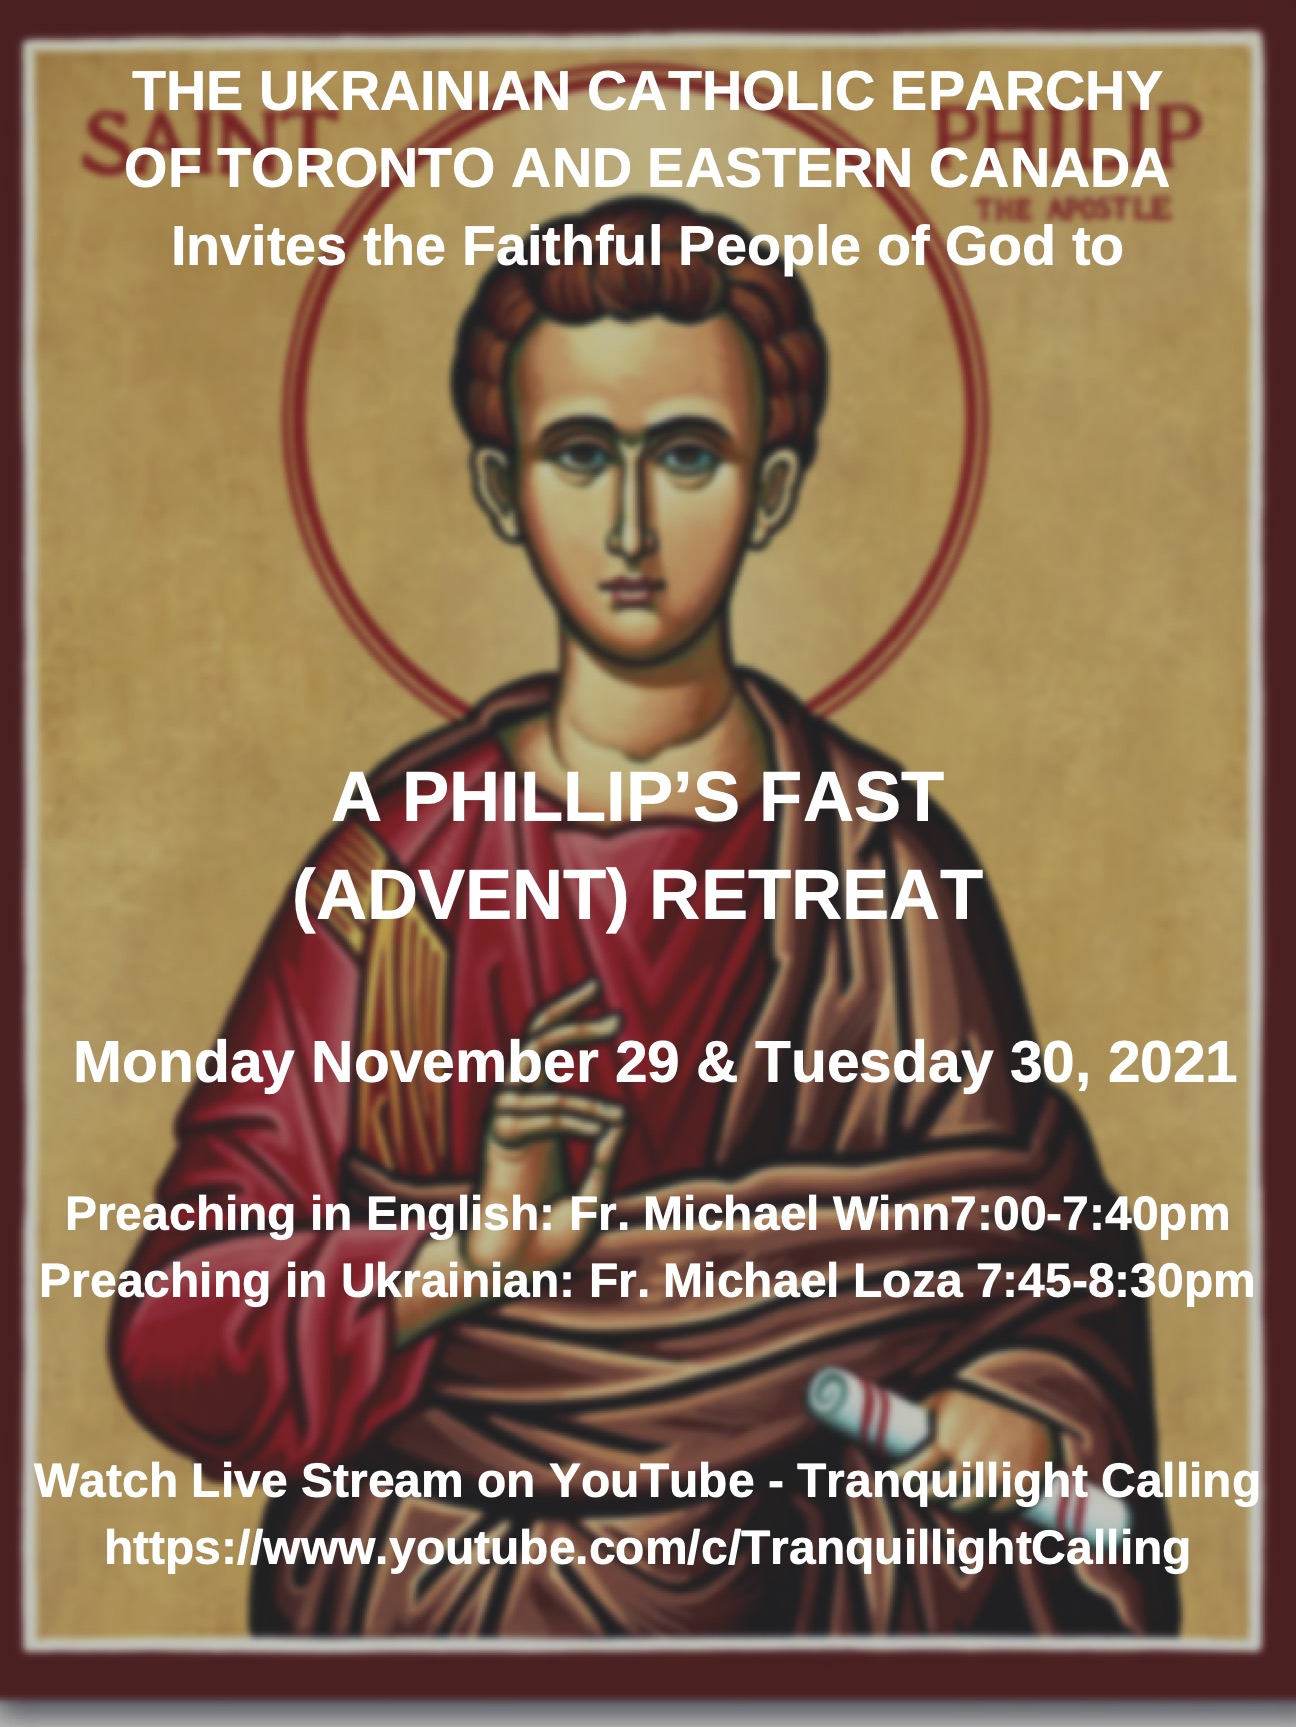 Nov 29-30, 7-7:40pm A Philip's Fast Retreat